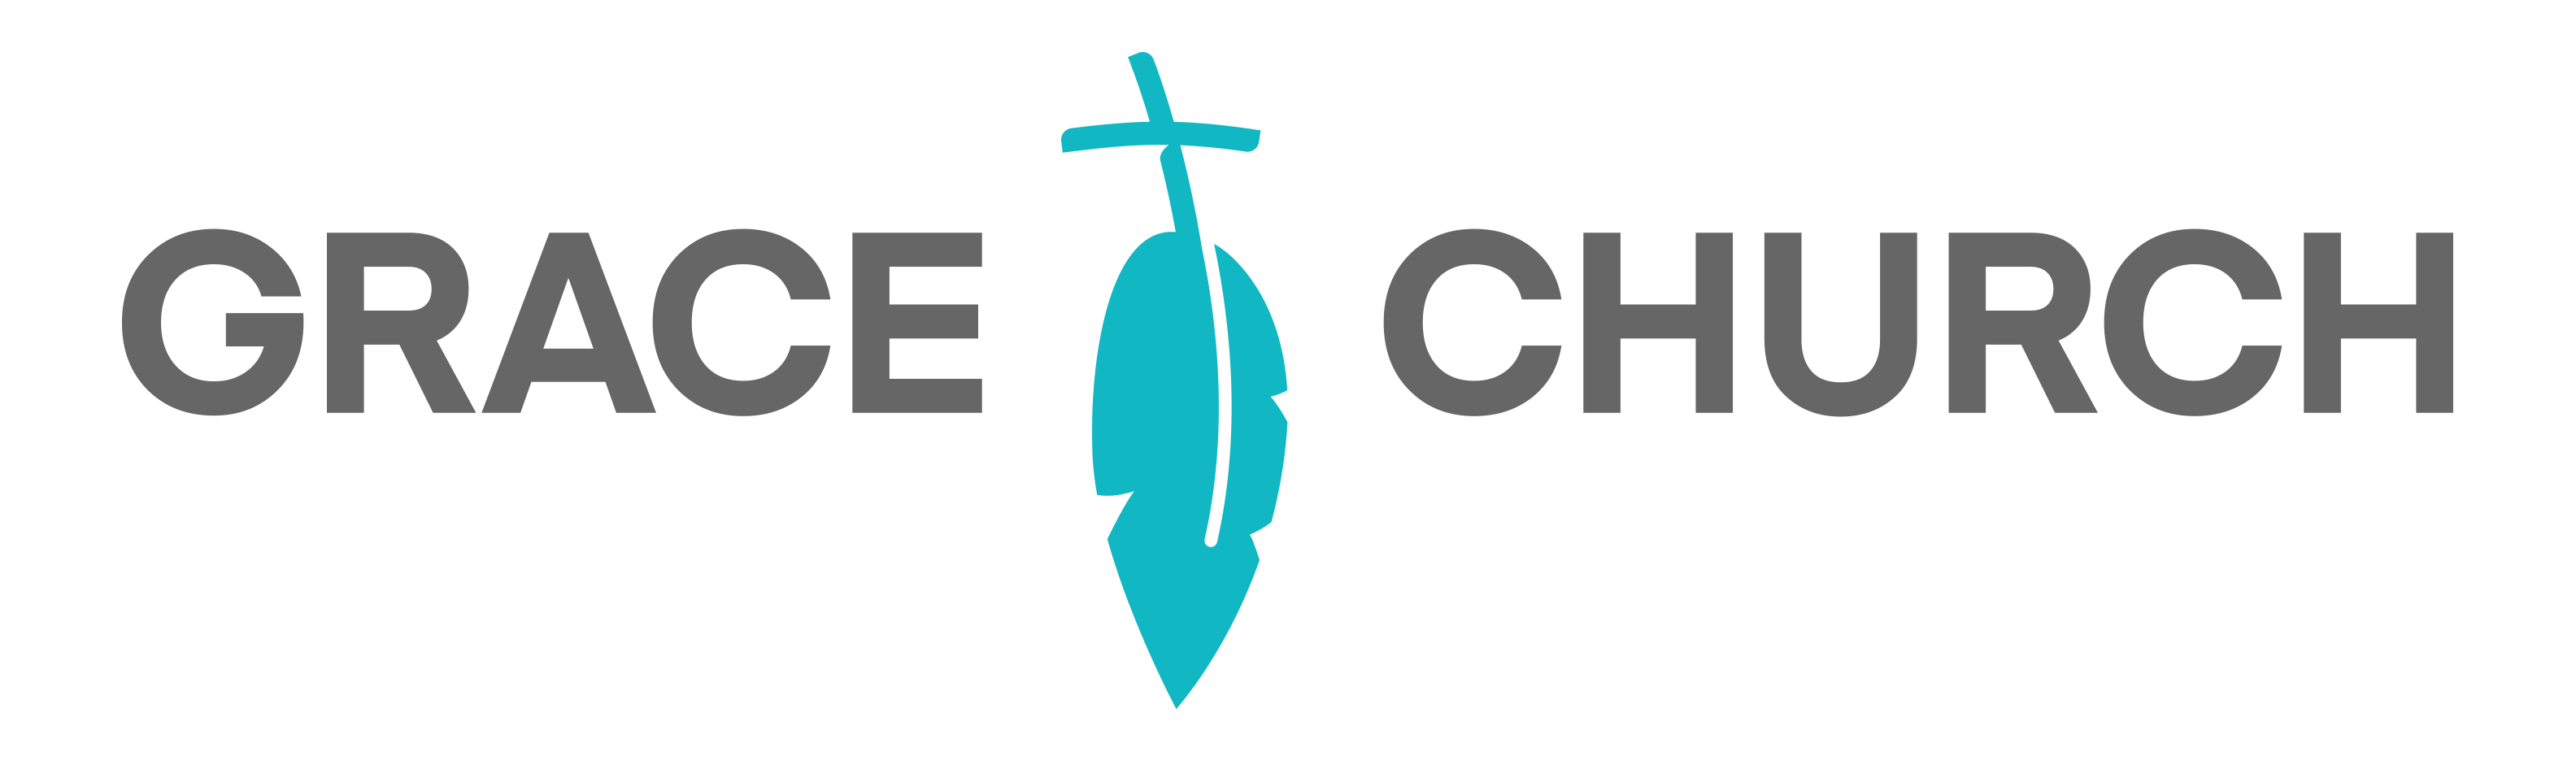 grace_church_logo